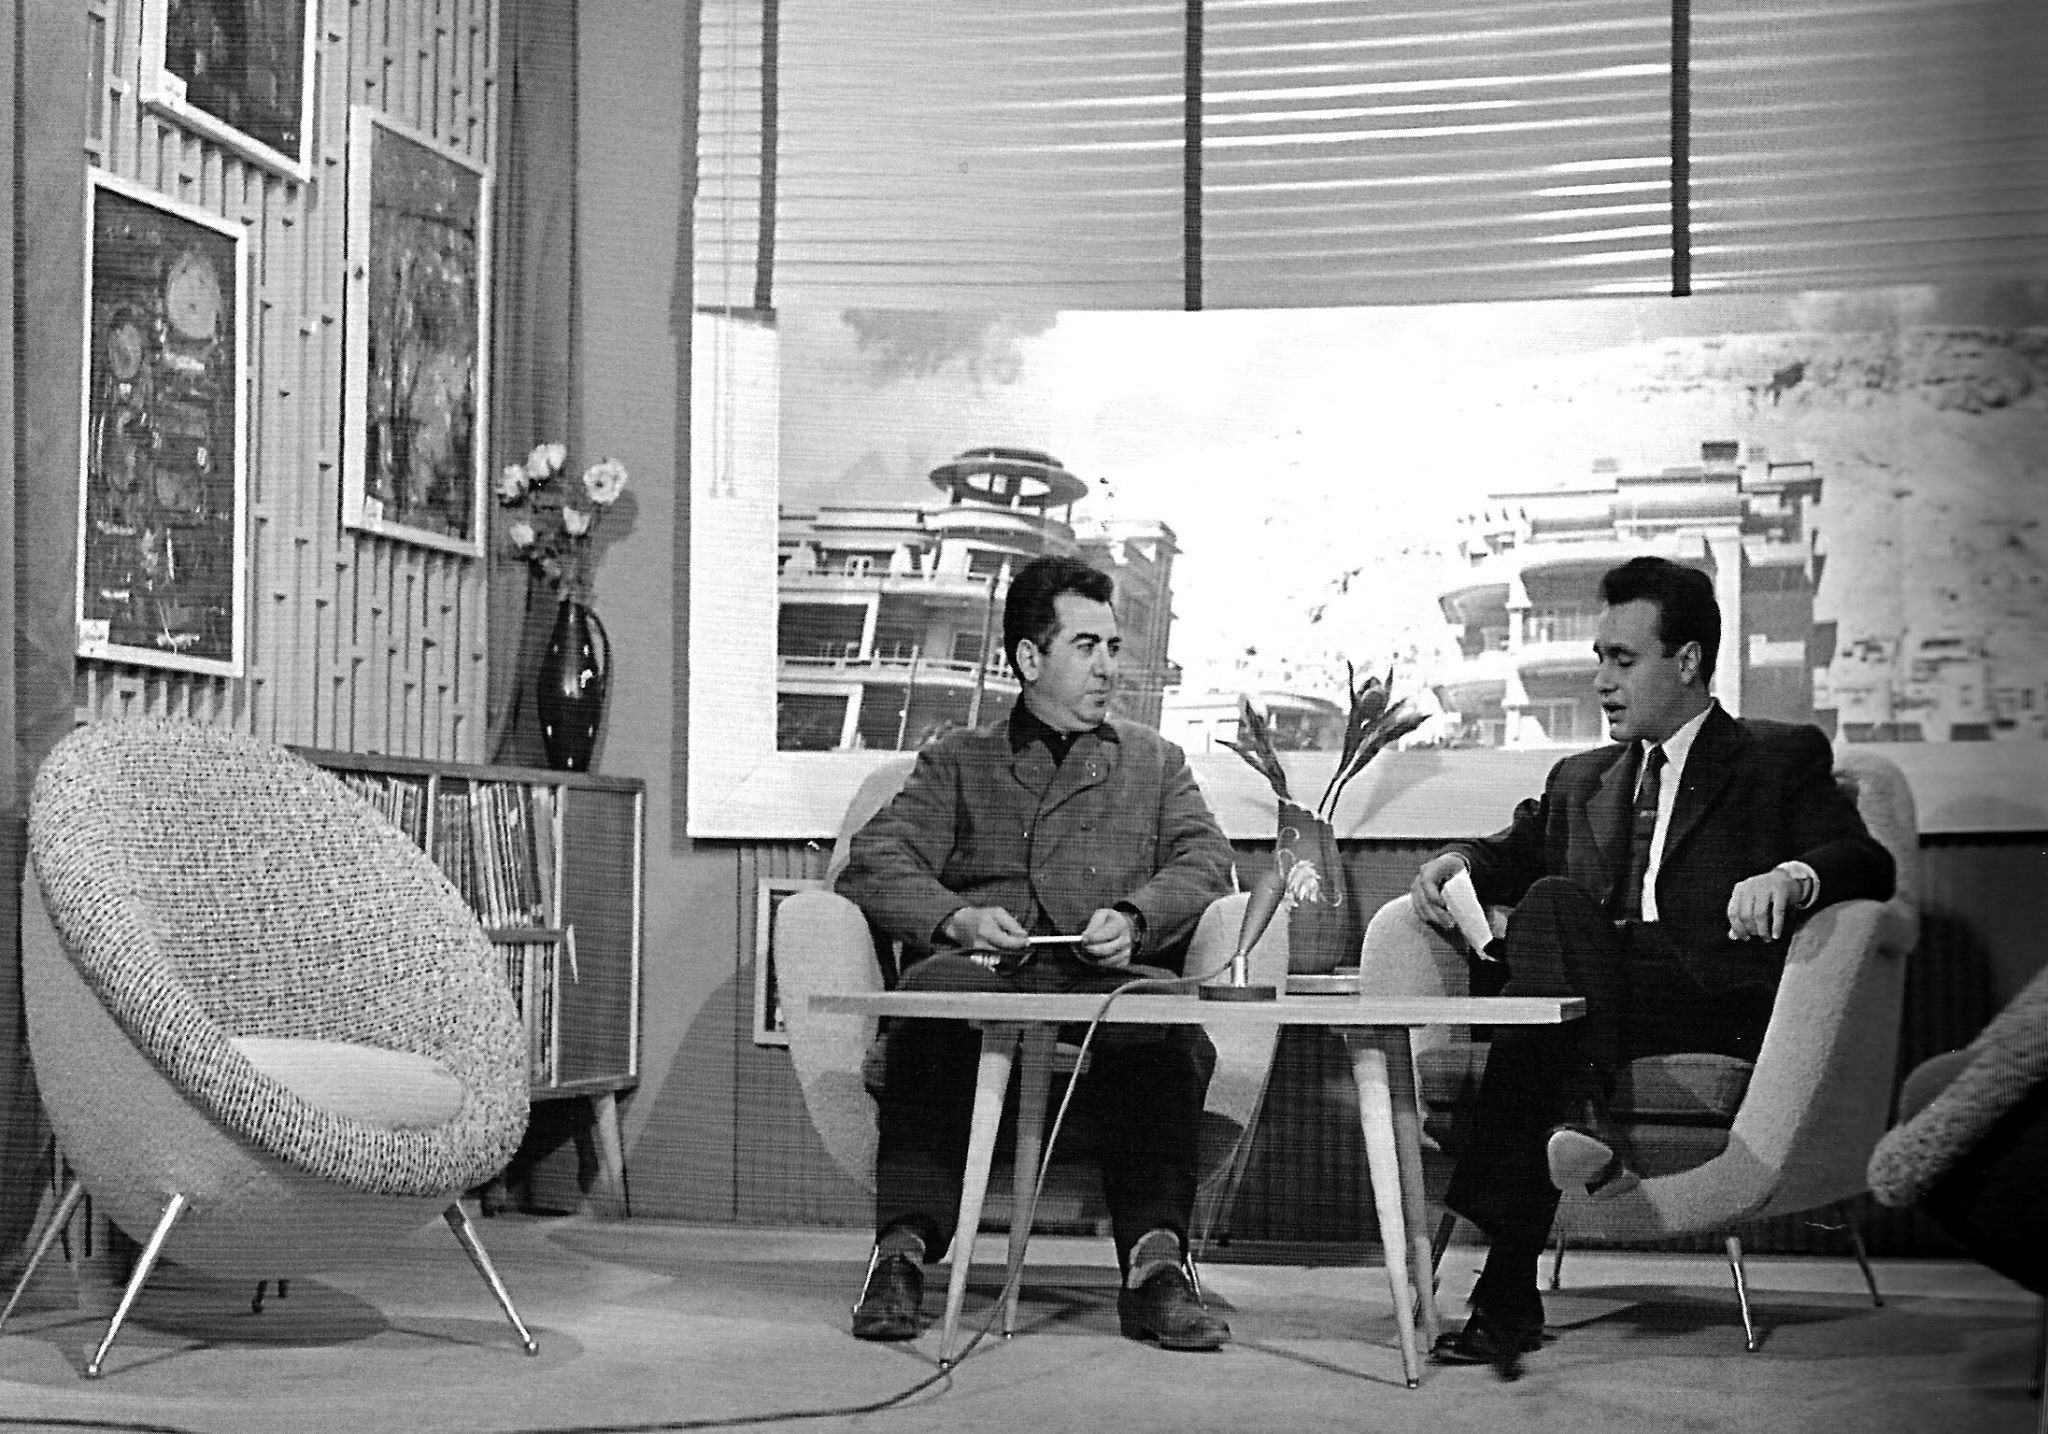 التاريخ السوري المعاصر - خلدون المالح في مقابلة تلفزيونية مع فاتح المدرس في ستينيات القرن العشرين